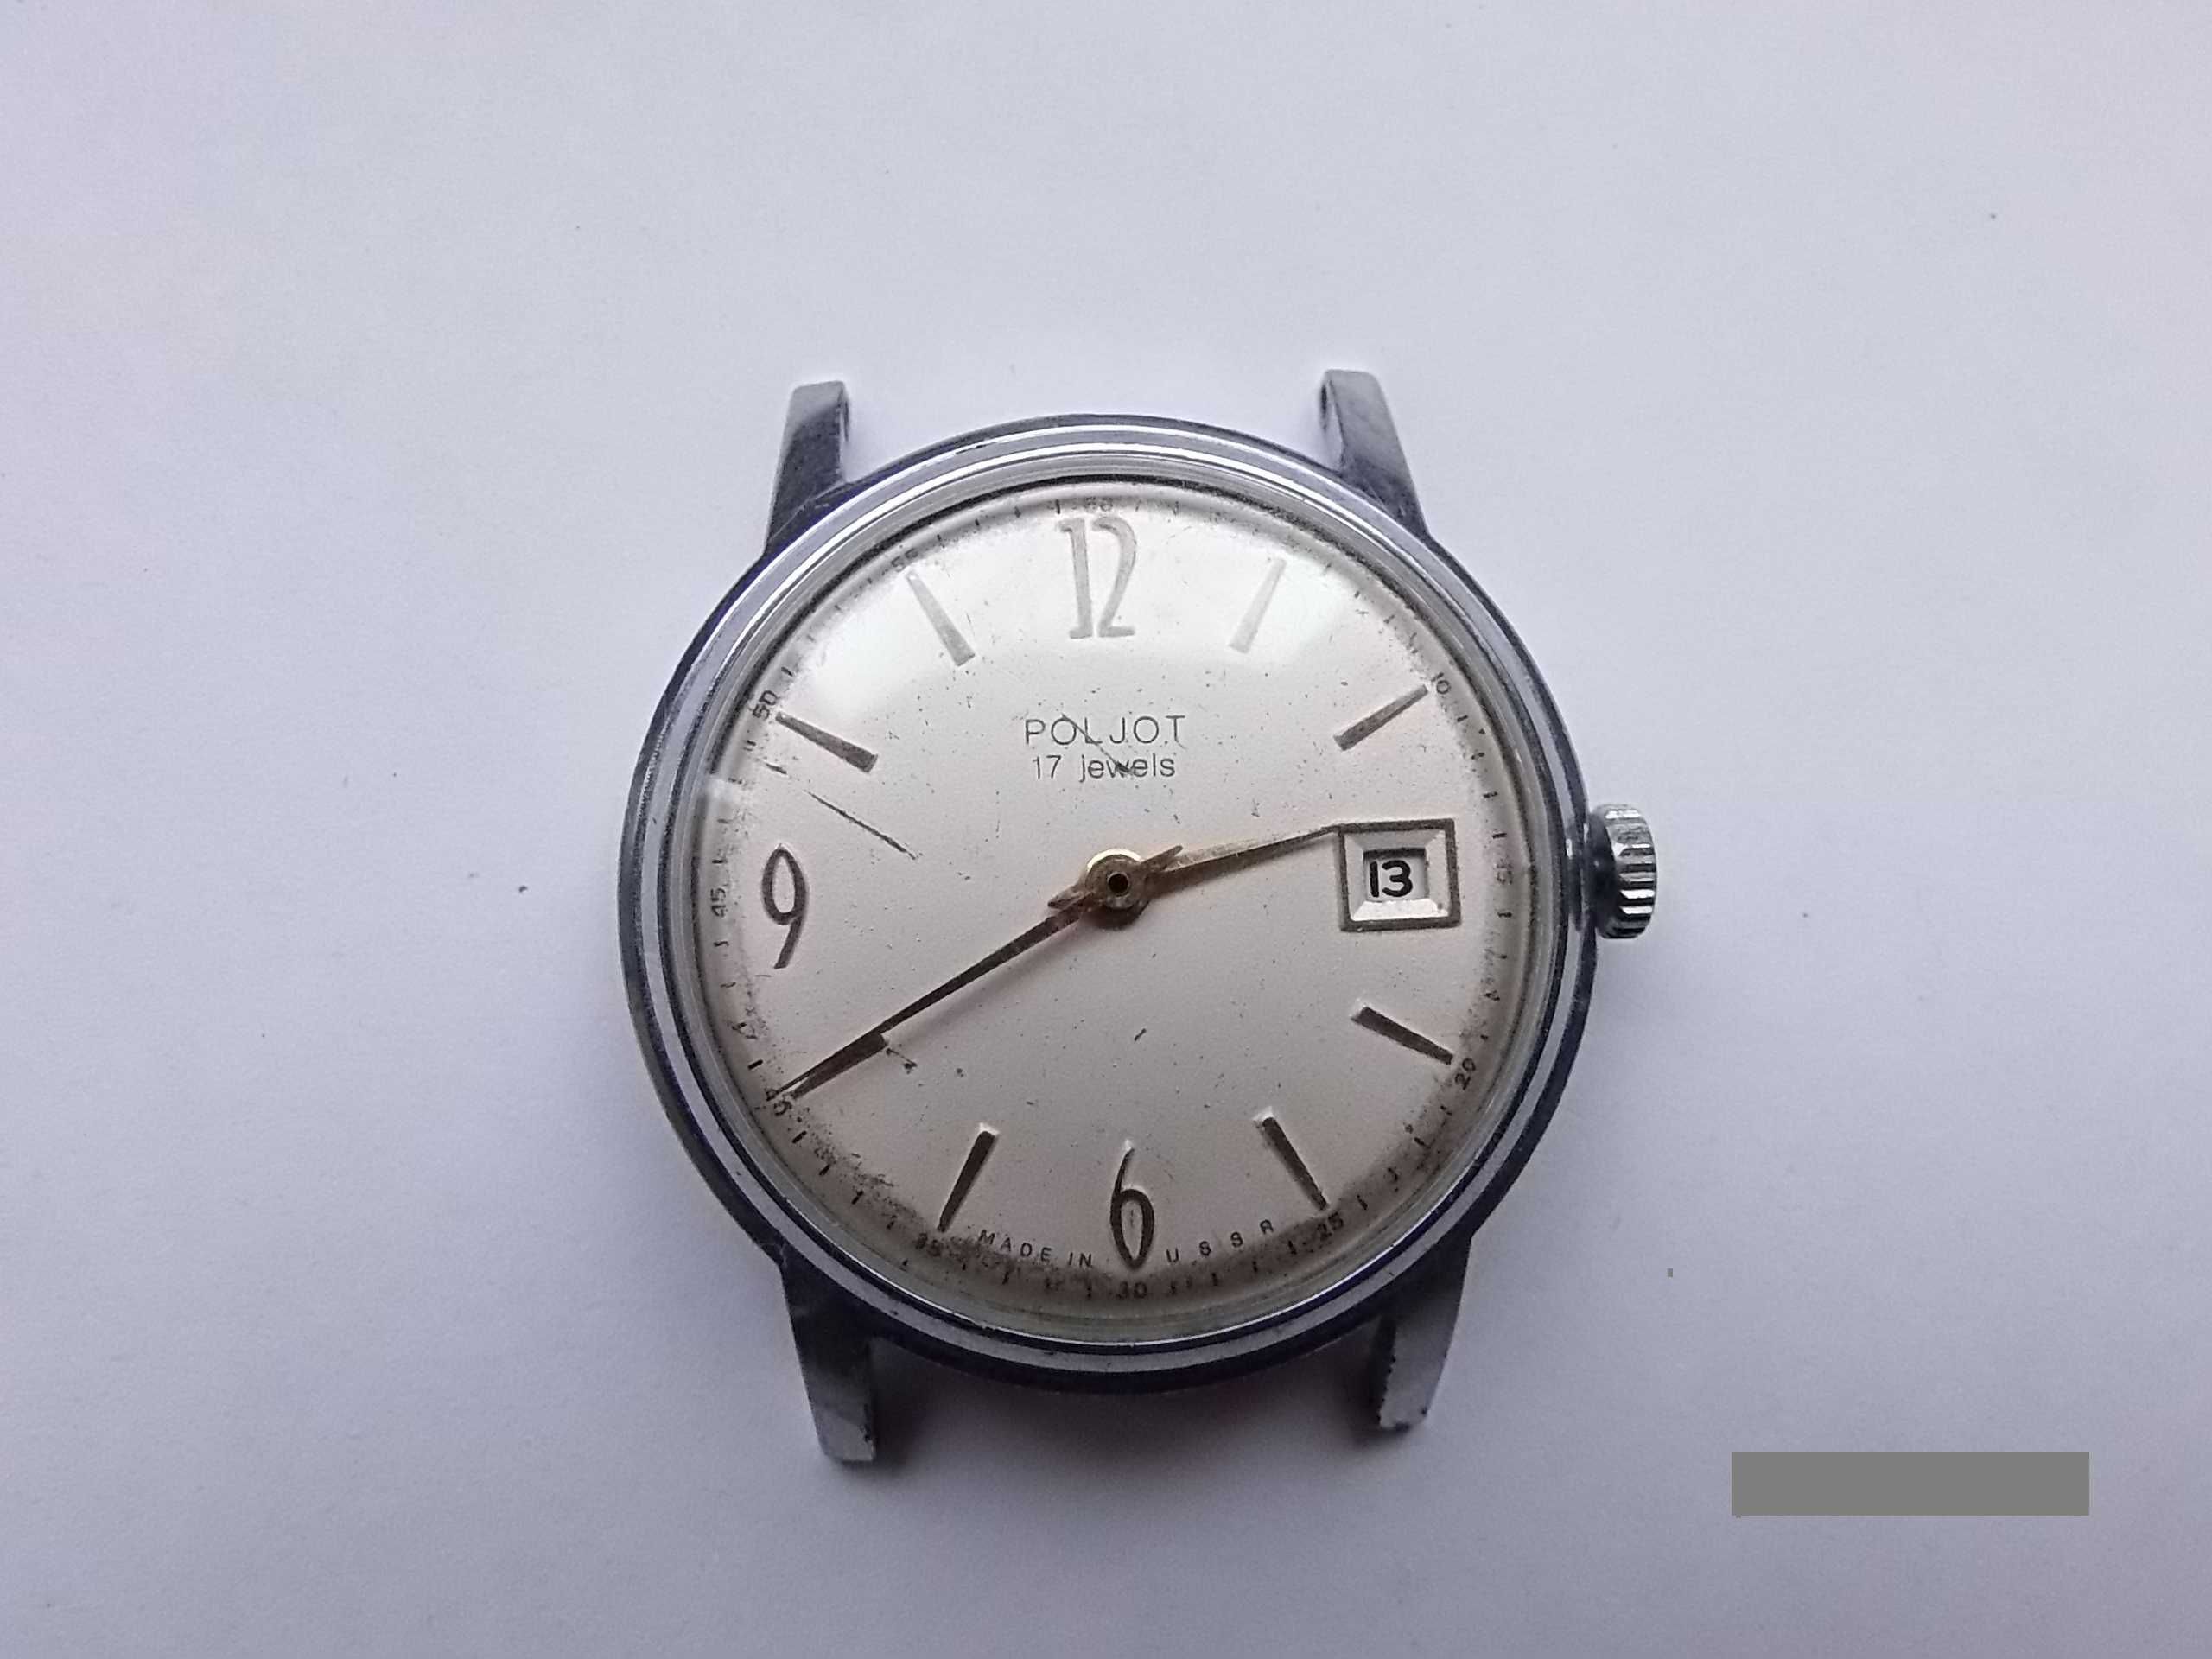 Zegarek męski naręczny POLJOT z datownikiem, prod. USSR - UŻYWANY